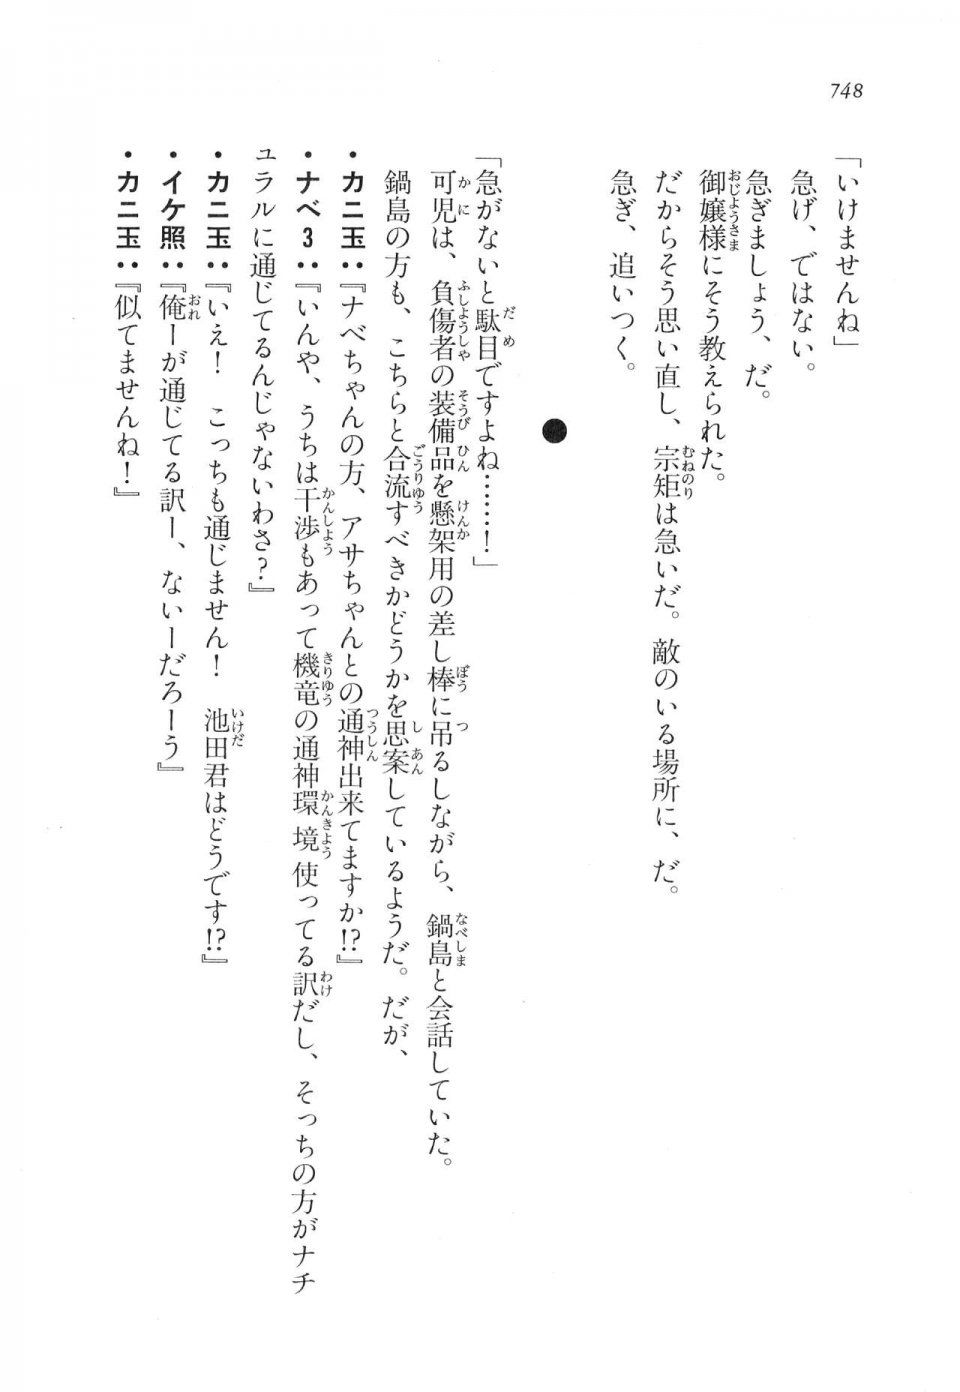 Kyoukai Senjou no Horizon LN Vol 17(7B) - Photo #750